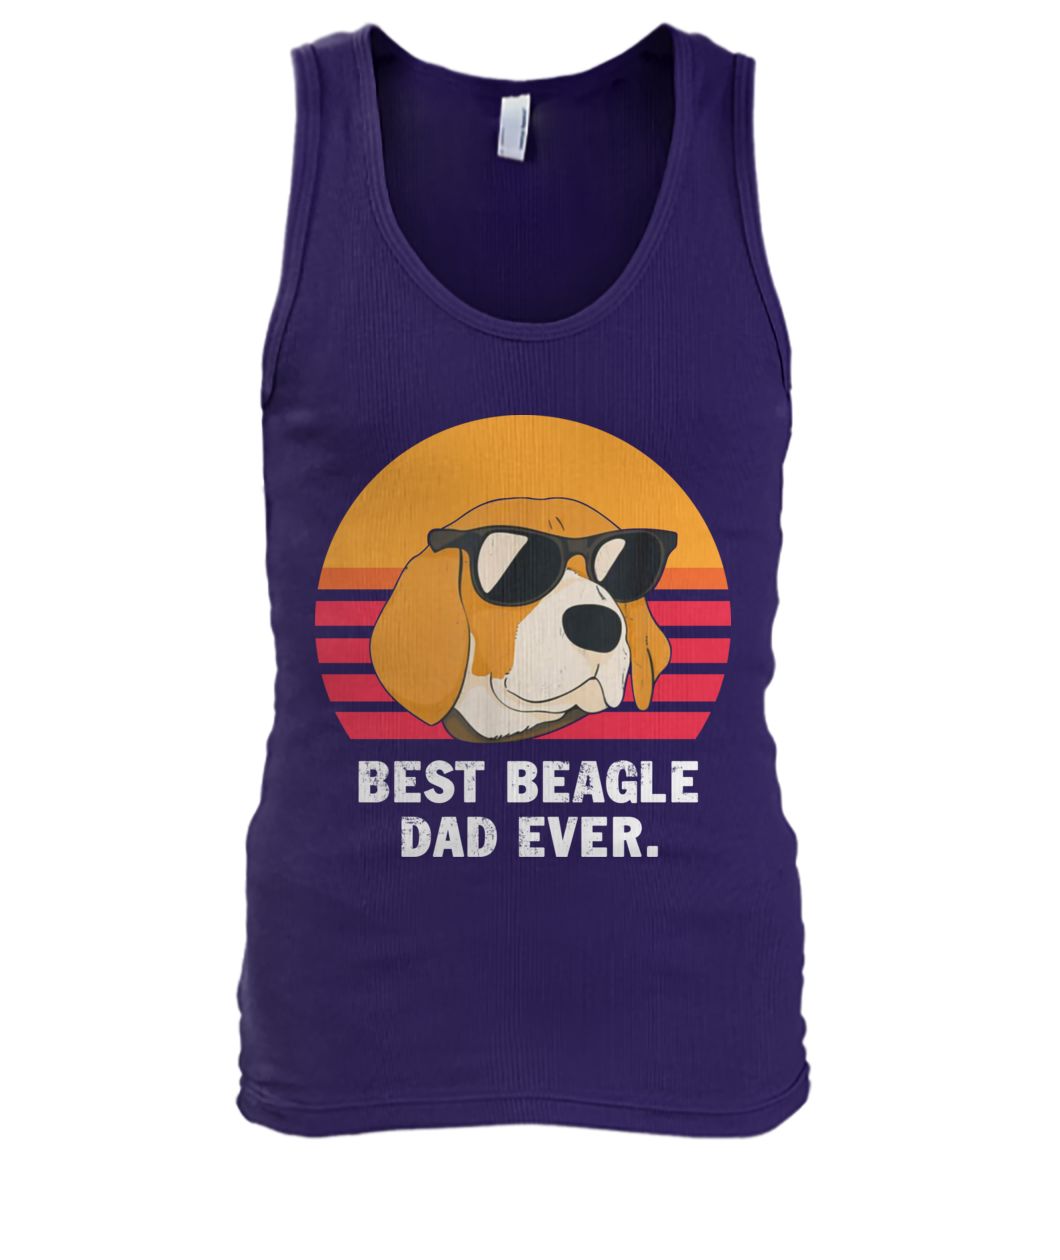 Vintage best beagle dad ever men's tank top